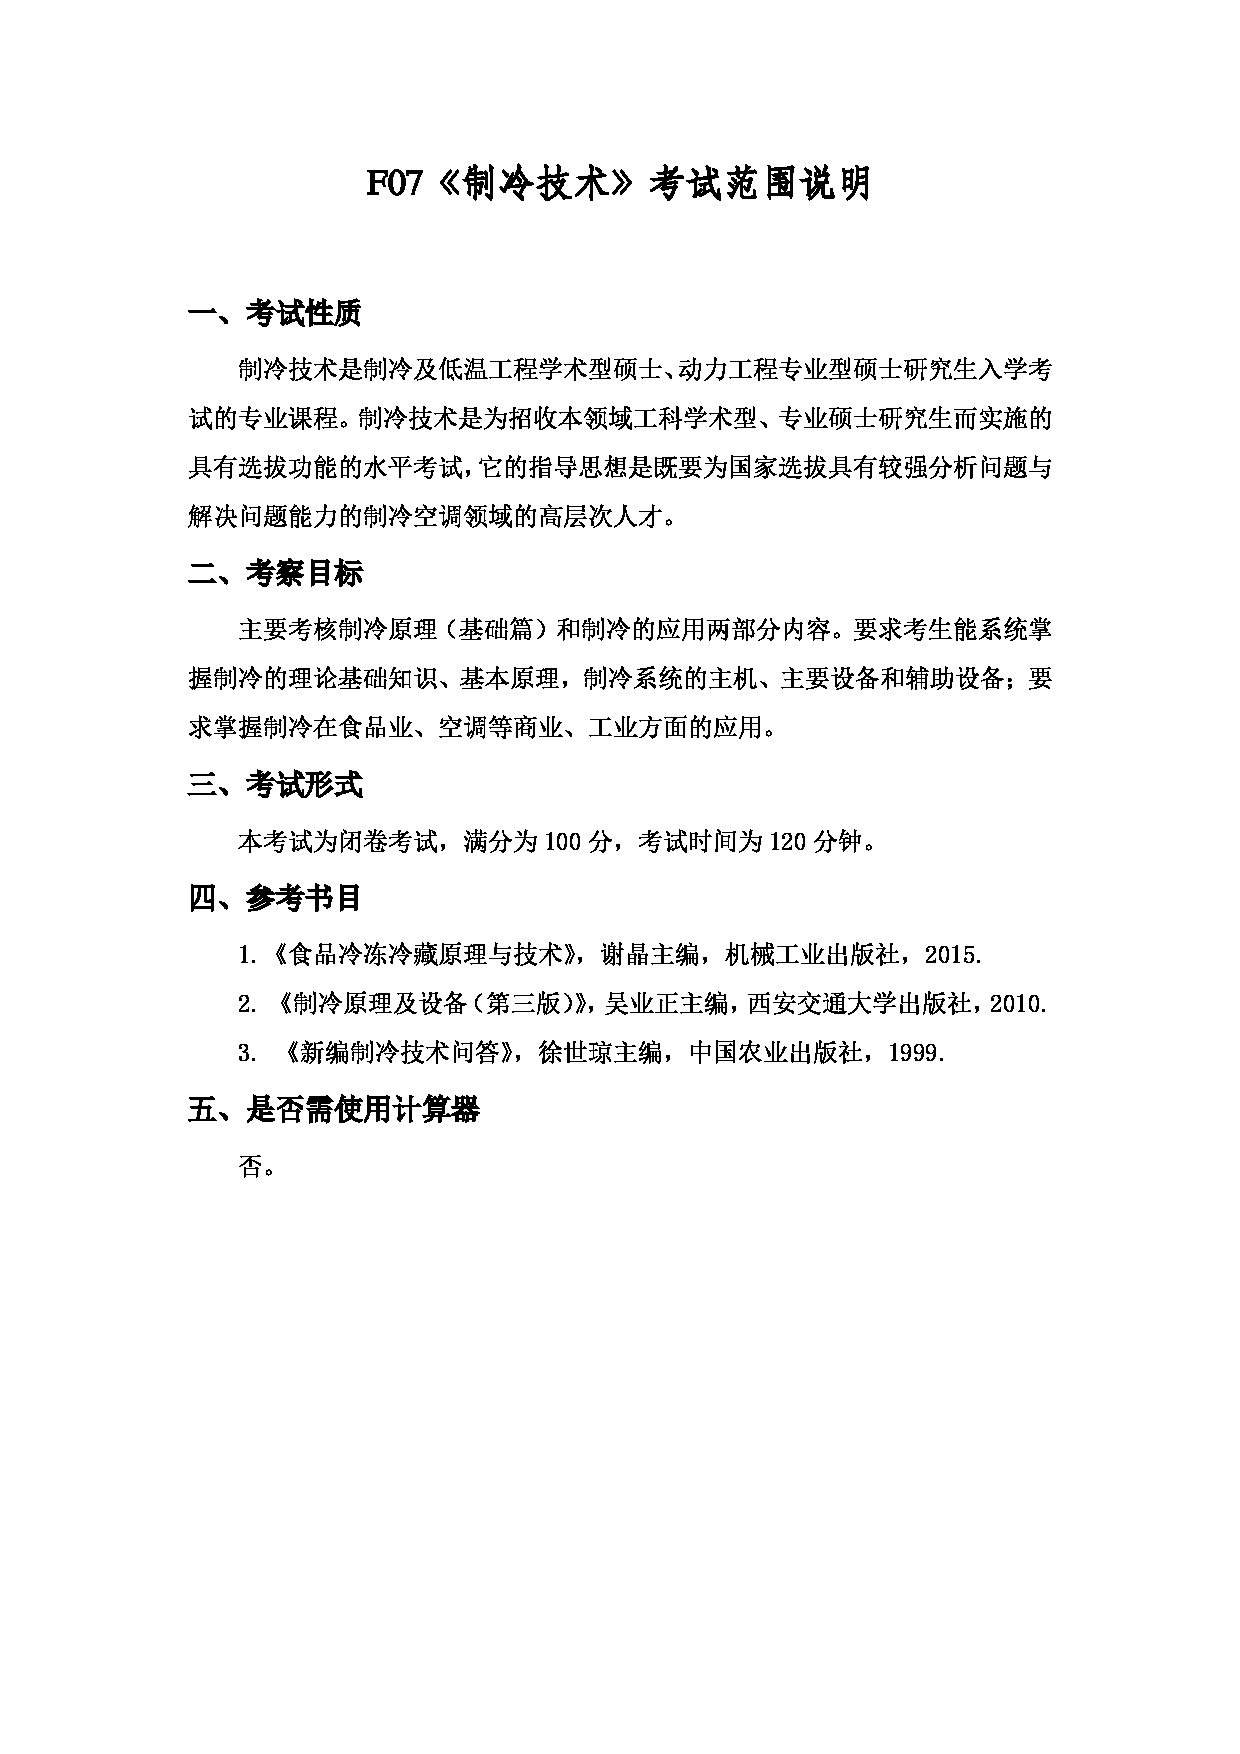 2022考研大纲：上海海洋大学2022年考研自命题科目 F07制冷技术 考试大纲第1页